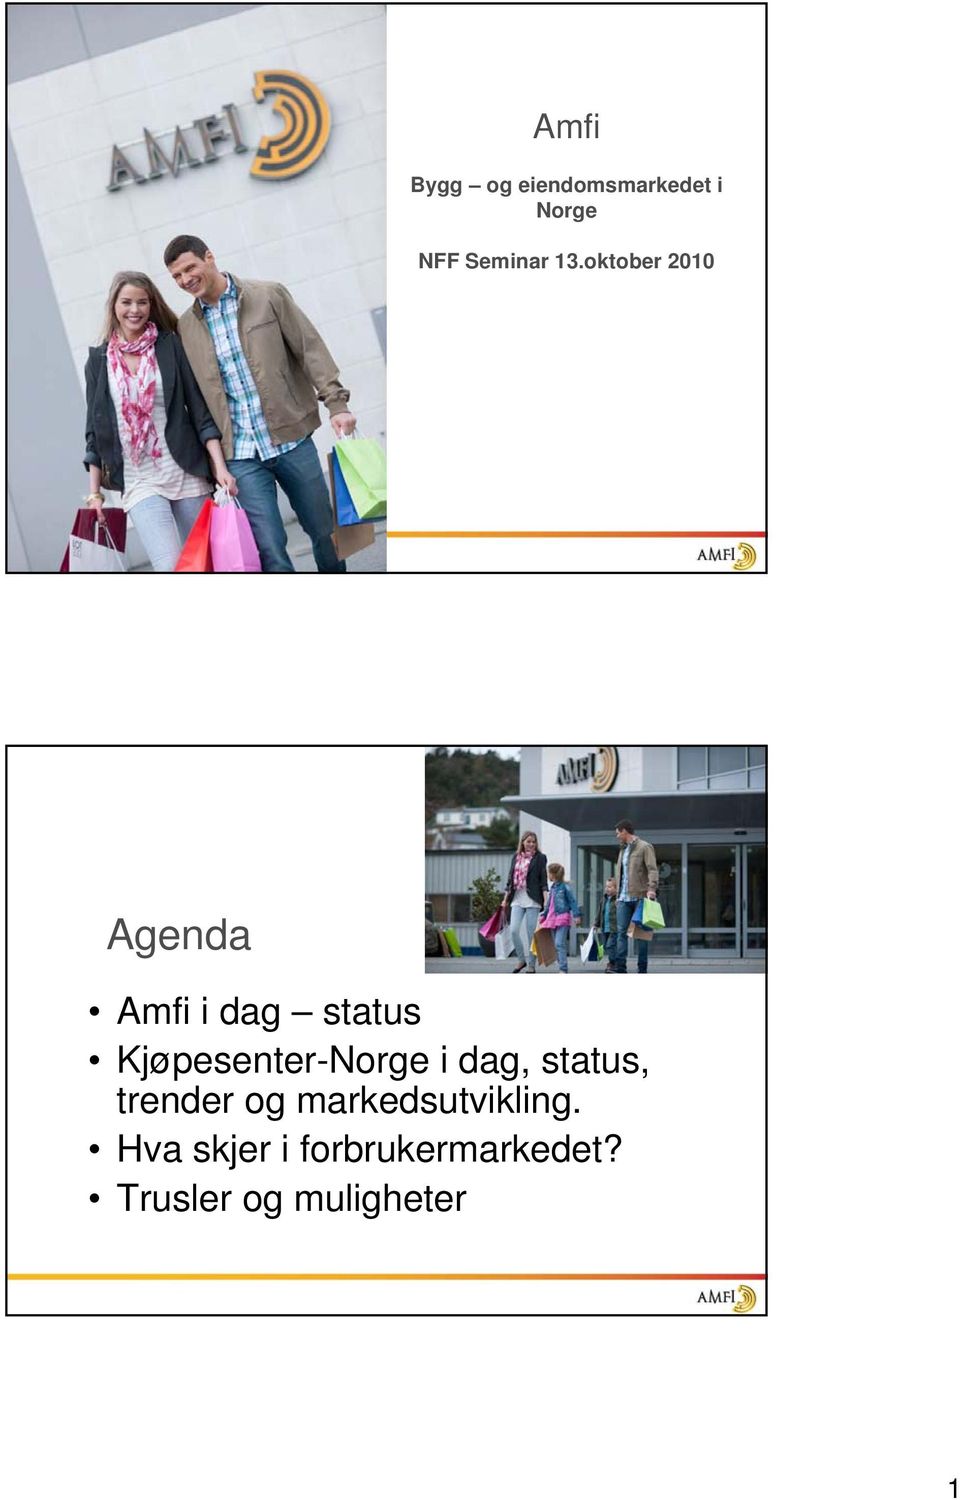 Kjøpesenter-Norge i dag, status, trender og